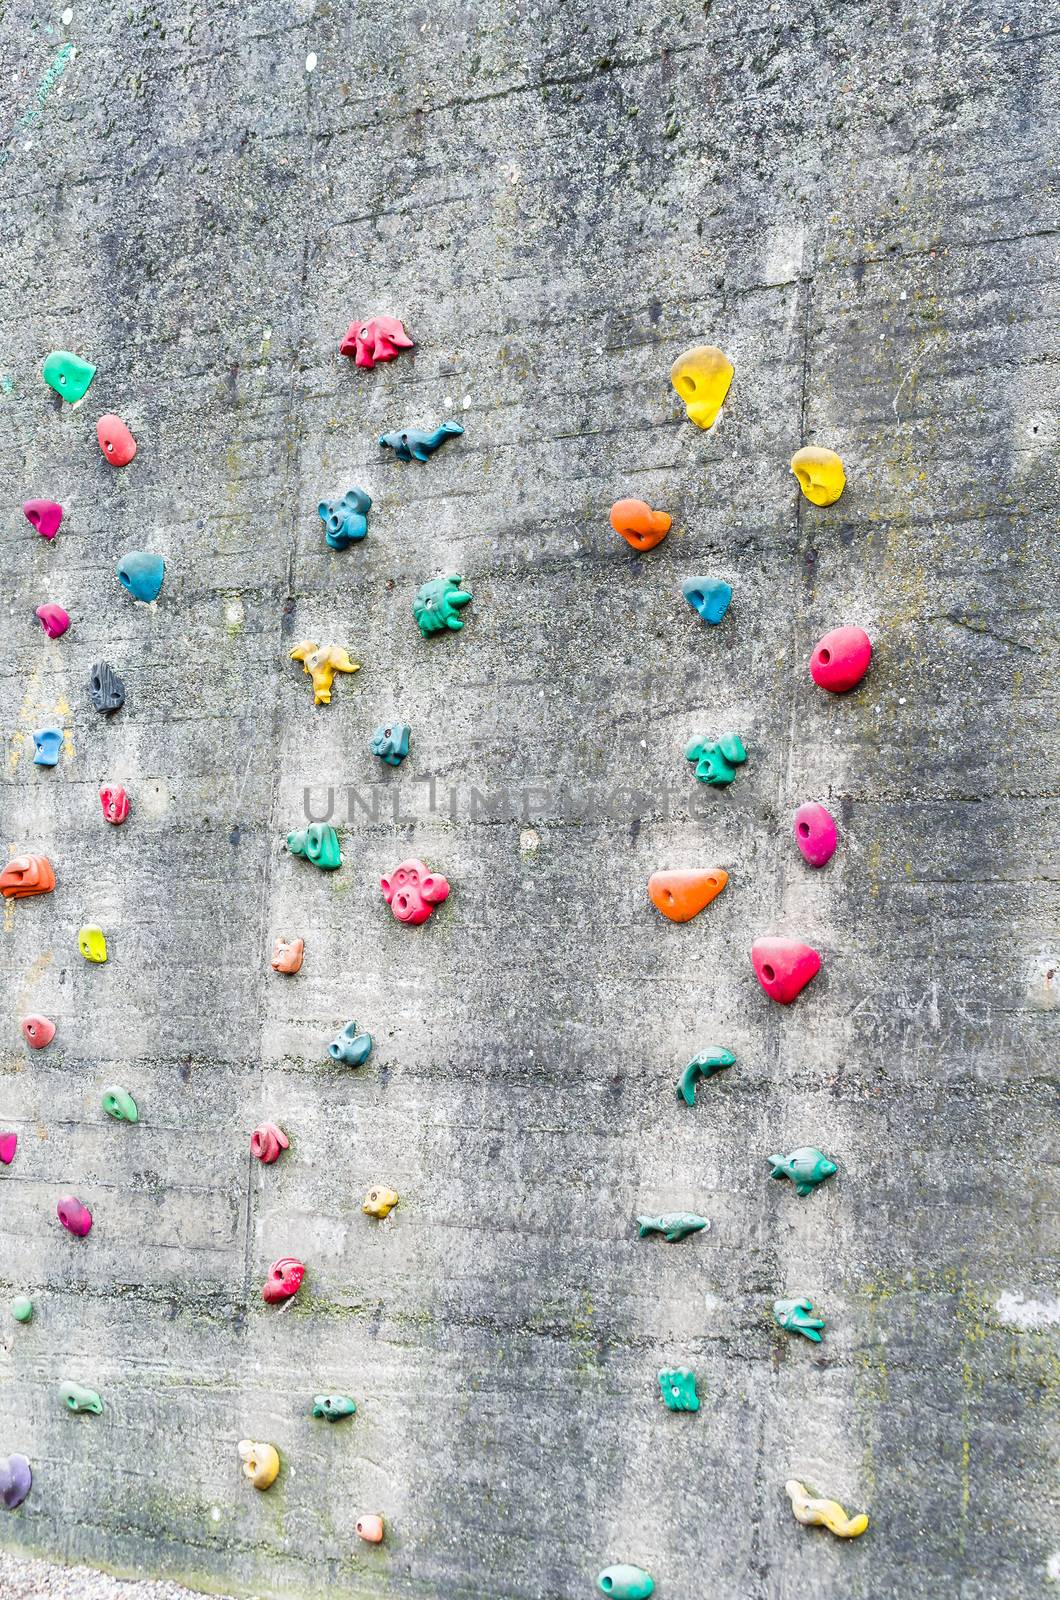 Detail climbing wall at an amusement park.